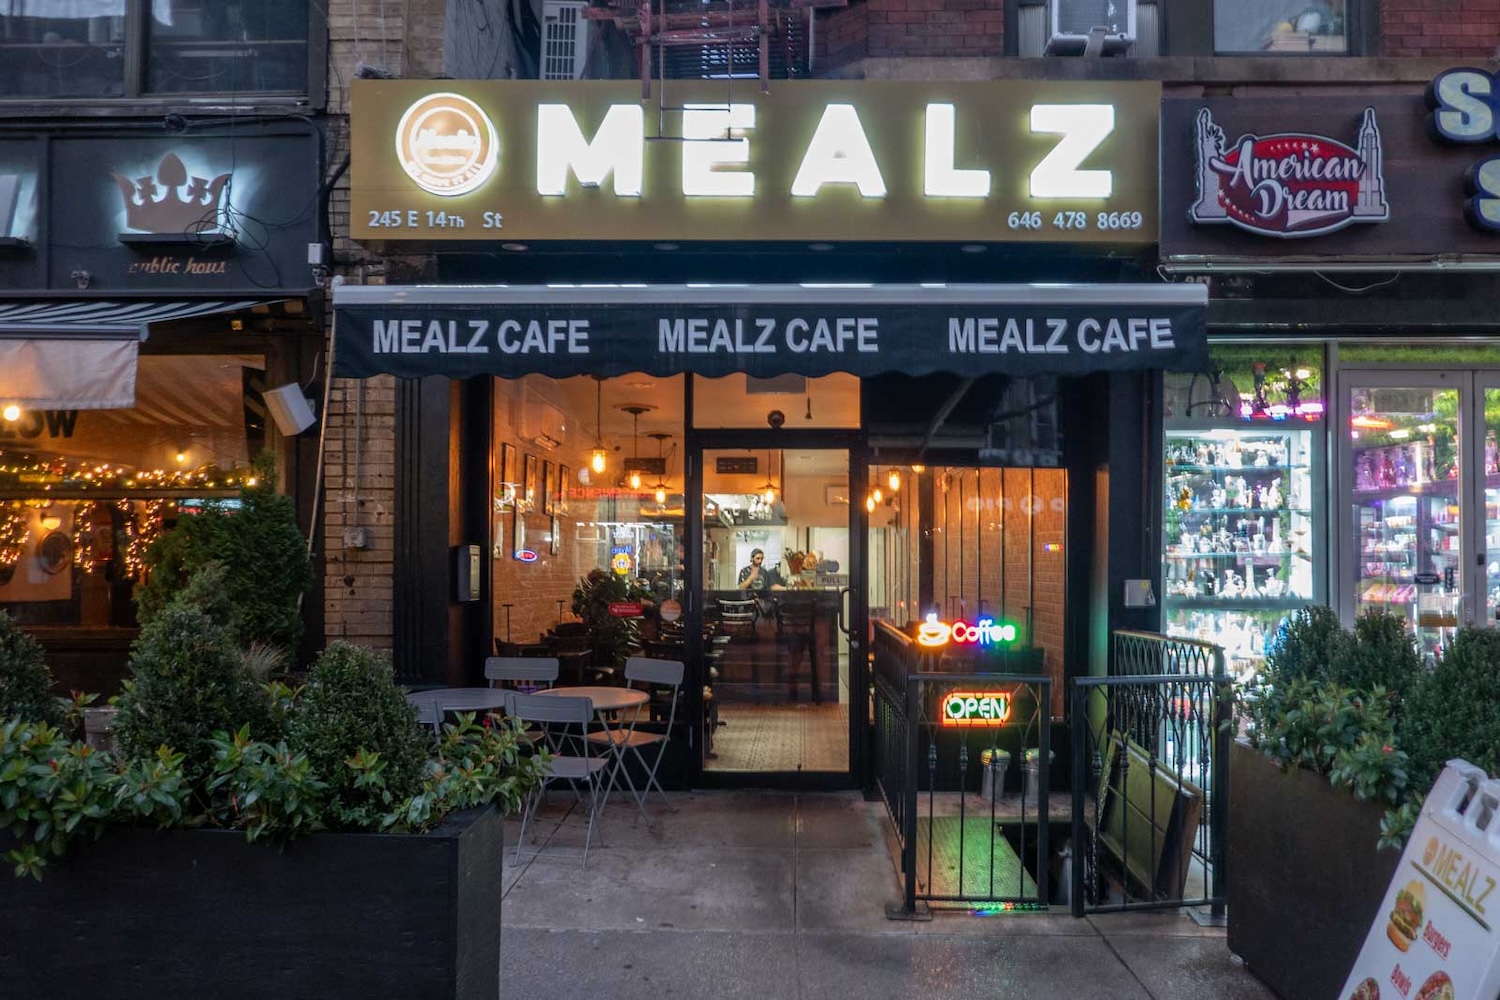 يقدم Mealz مزيجًا من الأطباق الجورجية الأصيلة والأطباق الأمريكية الكلاسيكية لأفراد الأسرة الذين يصعب إرضاؤهم.